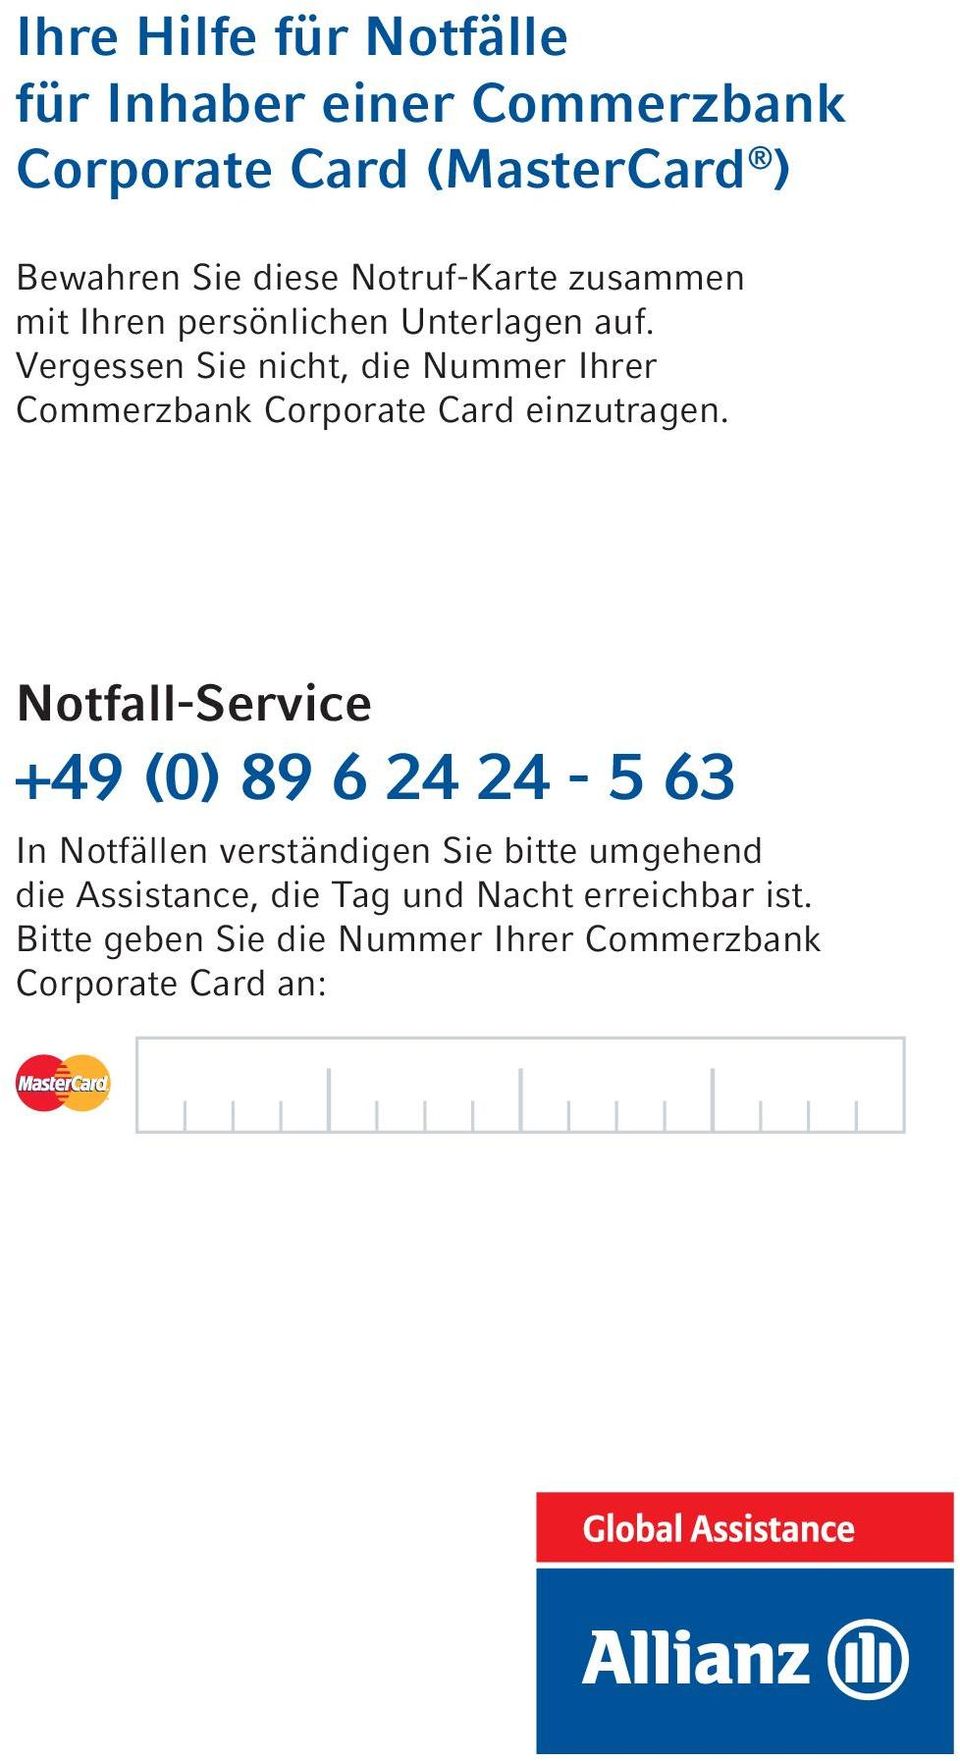 Vergessen Sie nicht, die Nummer Ihrer Commerzbank Corporate Card einzutragen.